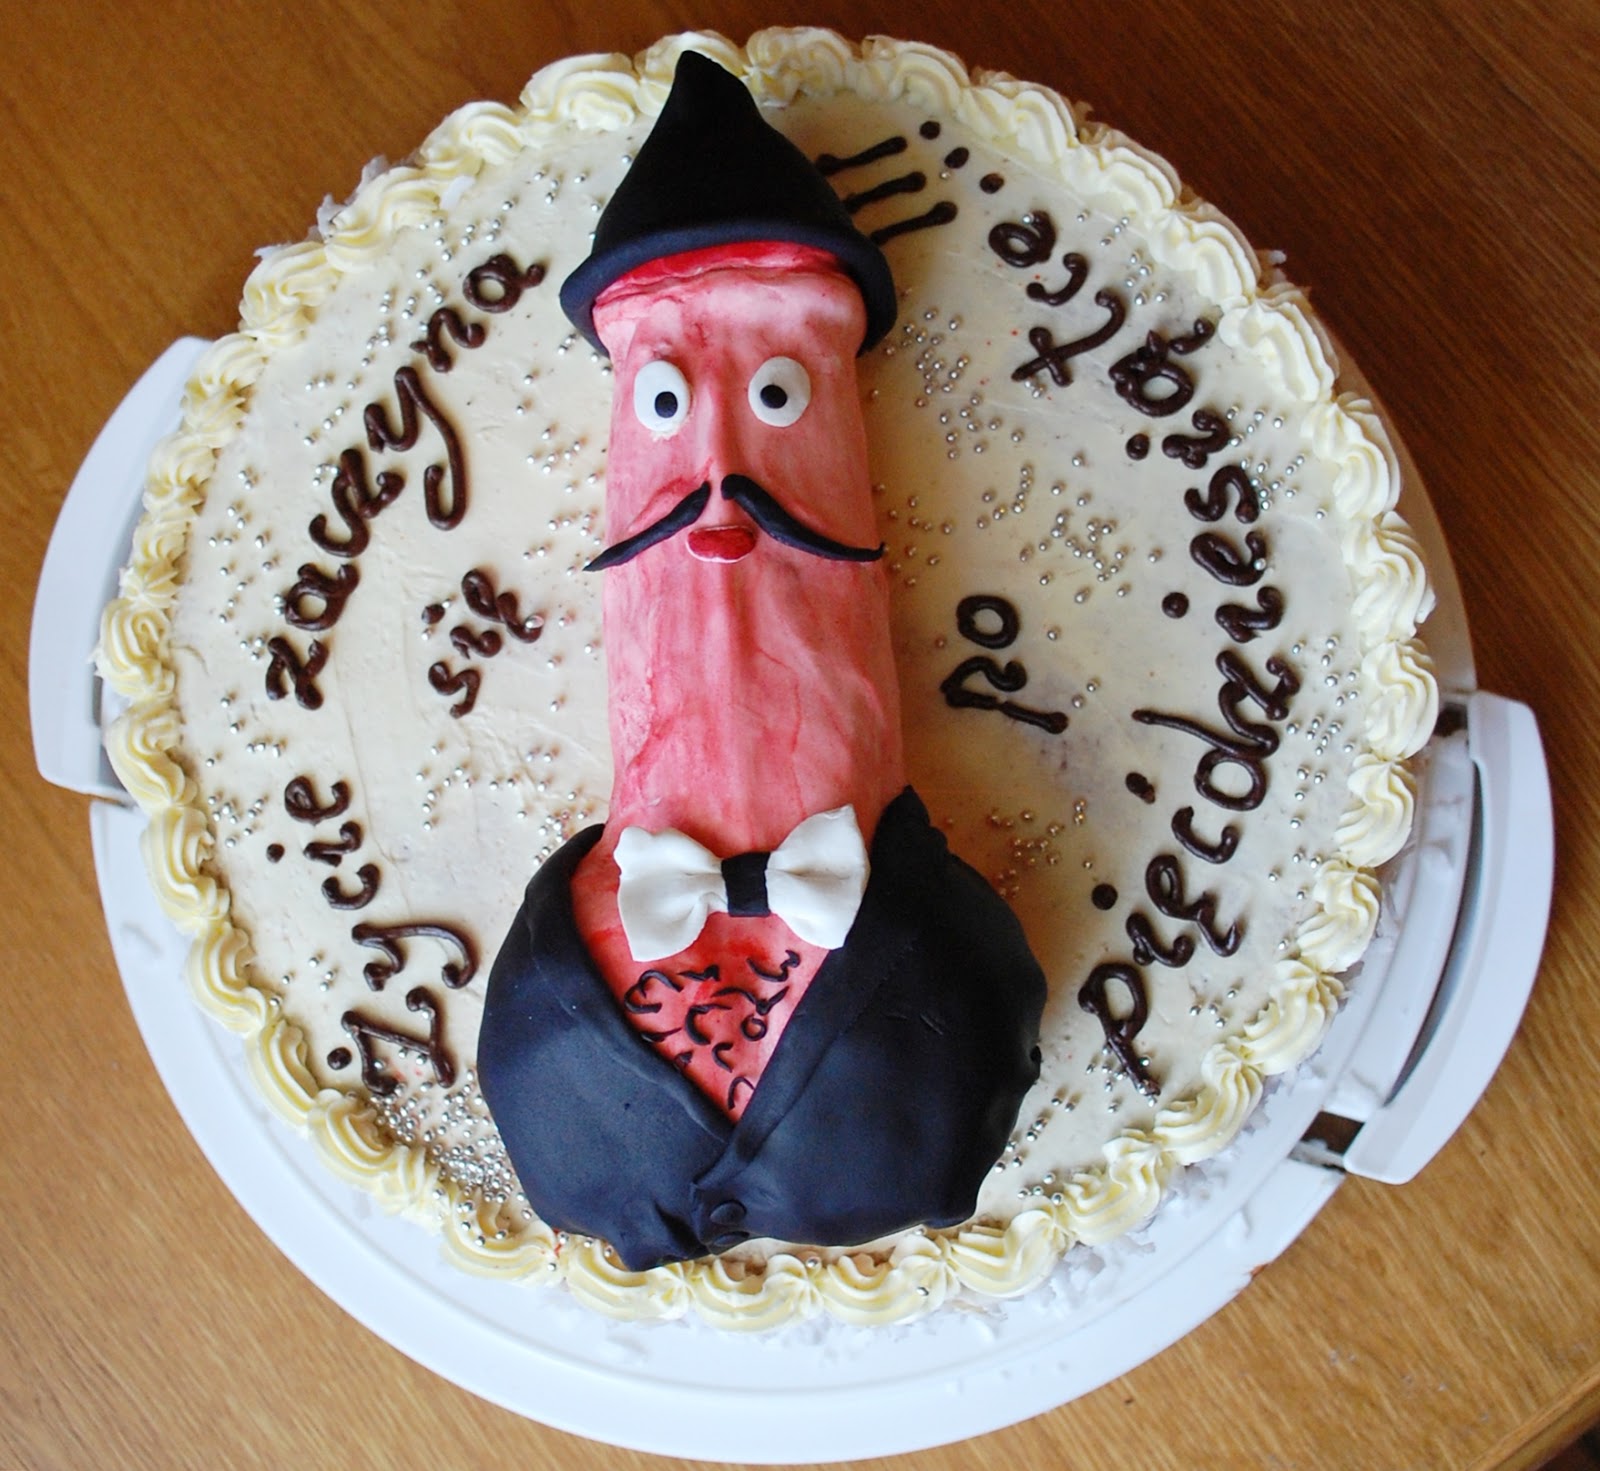 tort na 50 urodziny smieszny